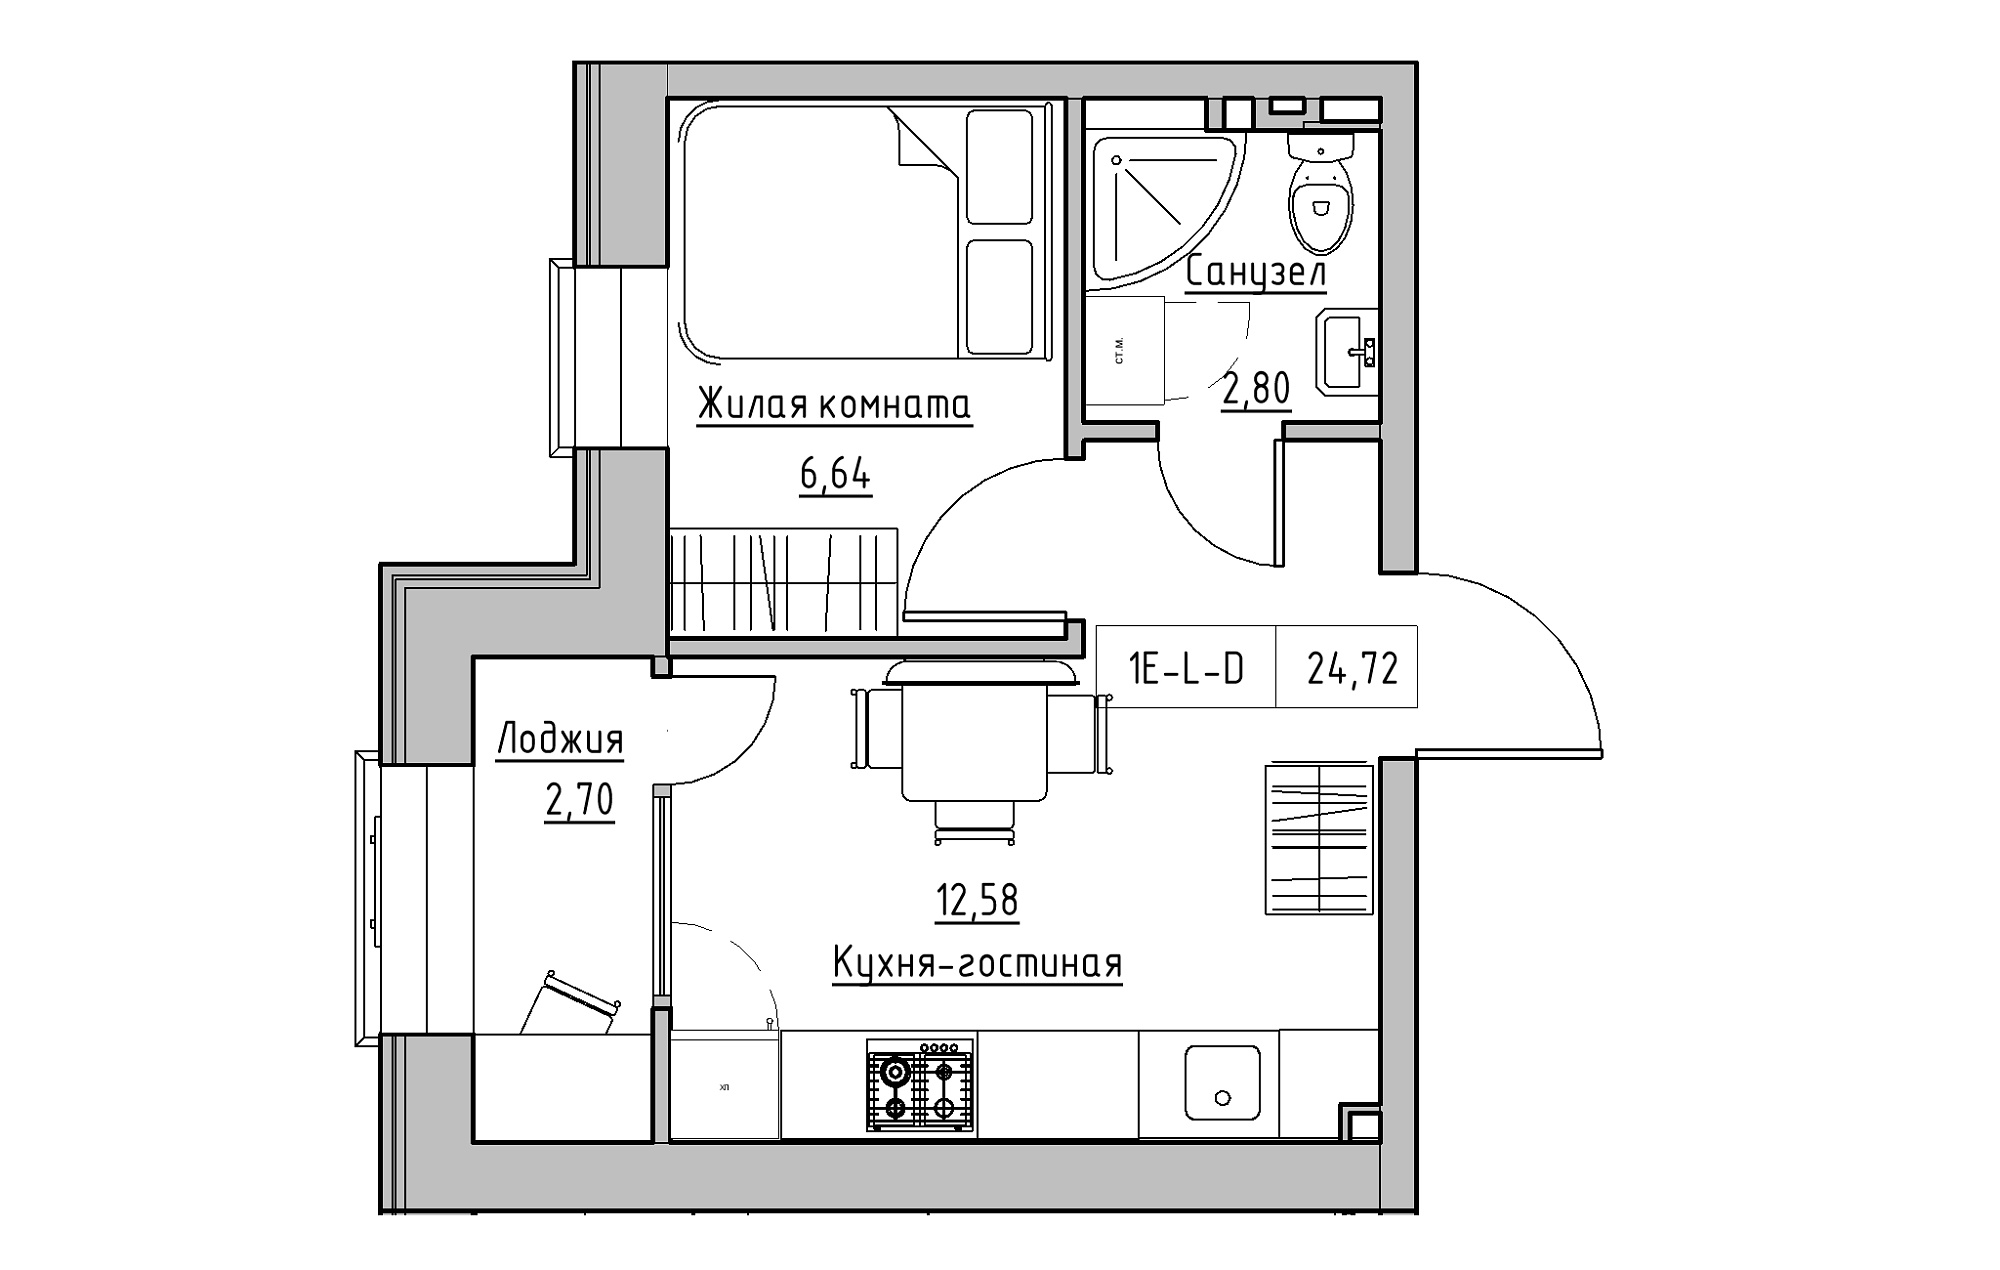 Планування 1-к квартира площею 24.72м2, KS-018-02/0013.